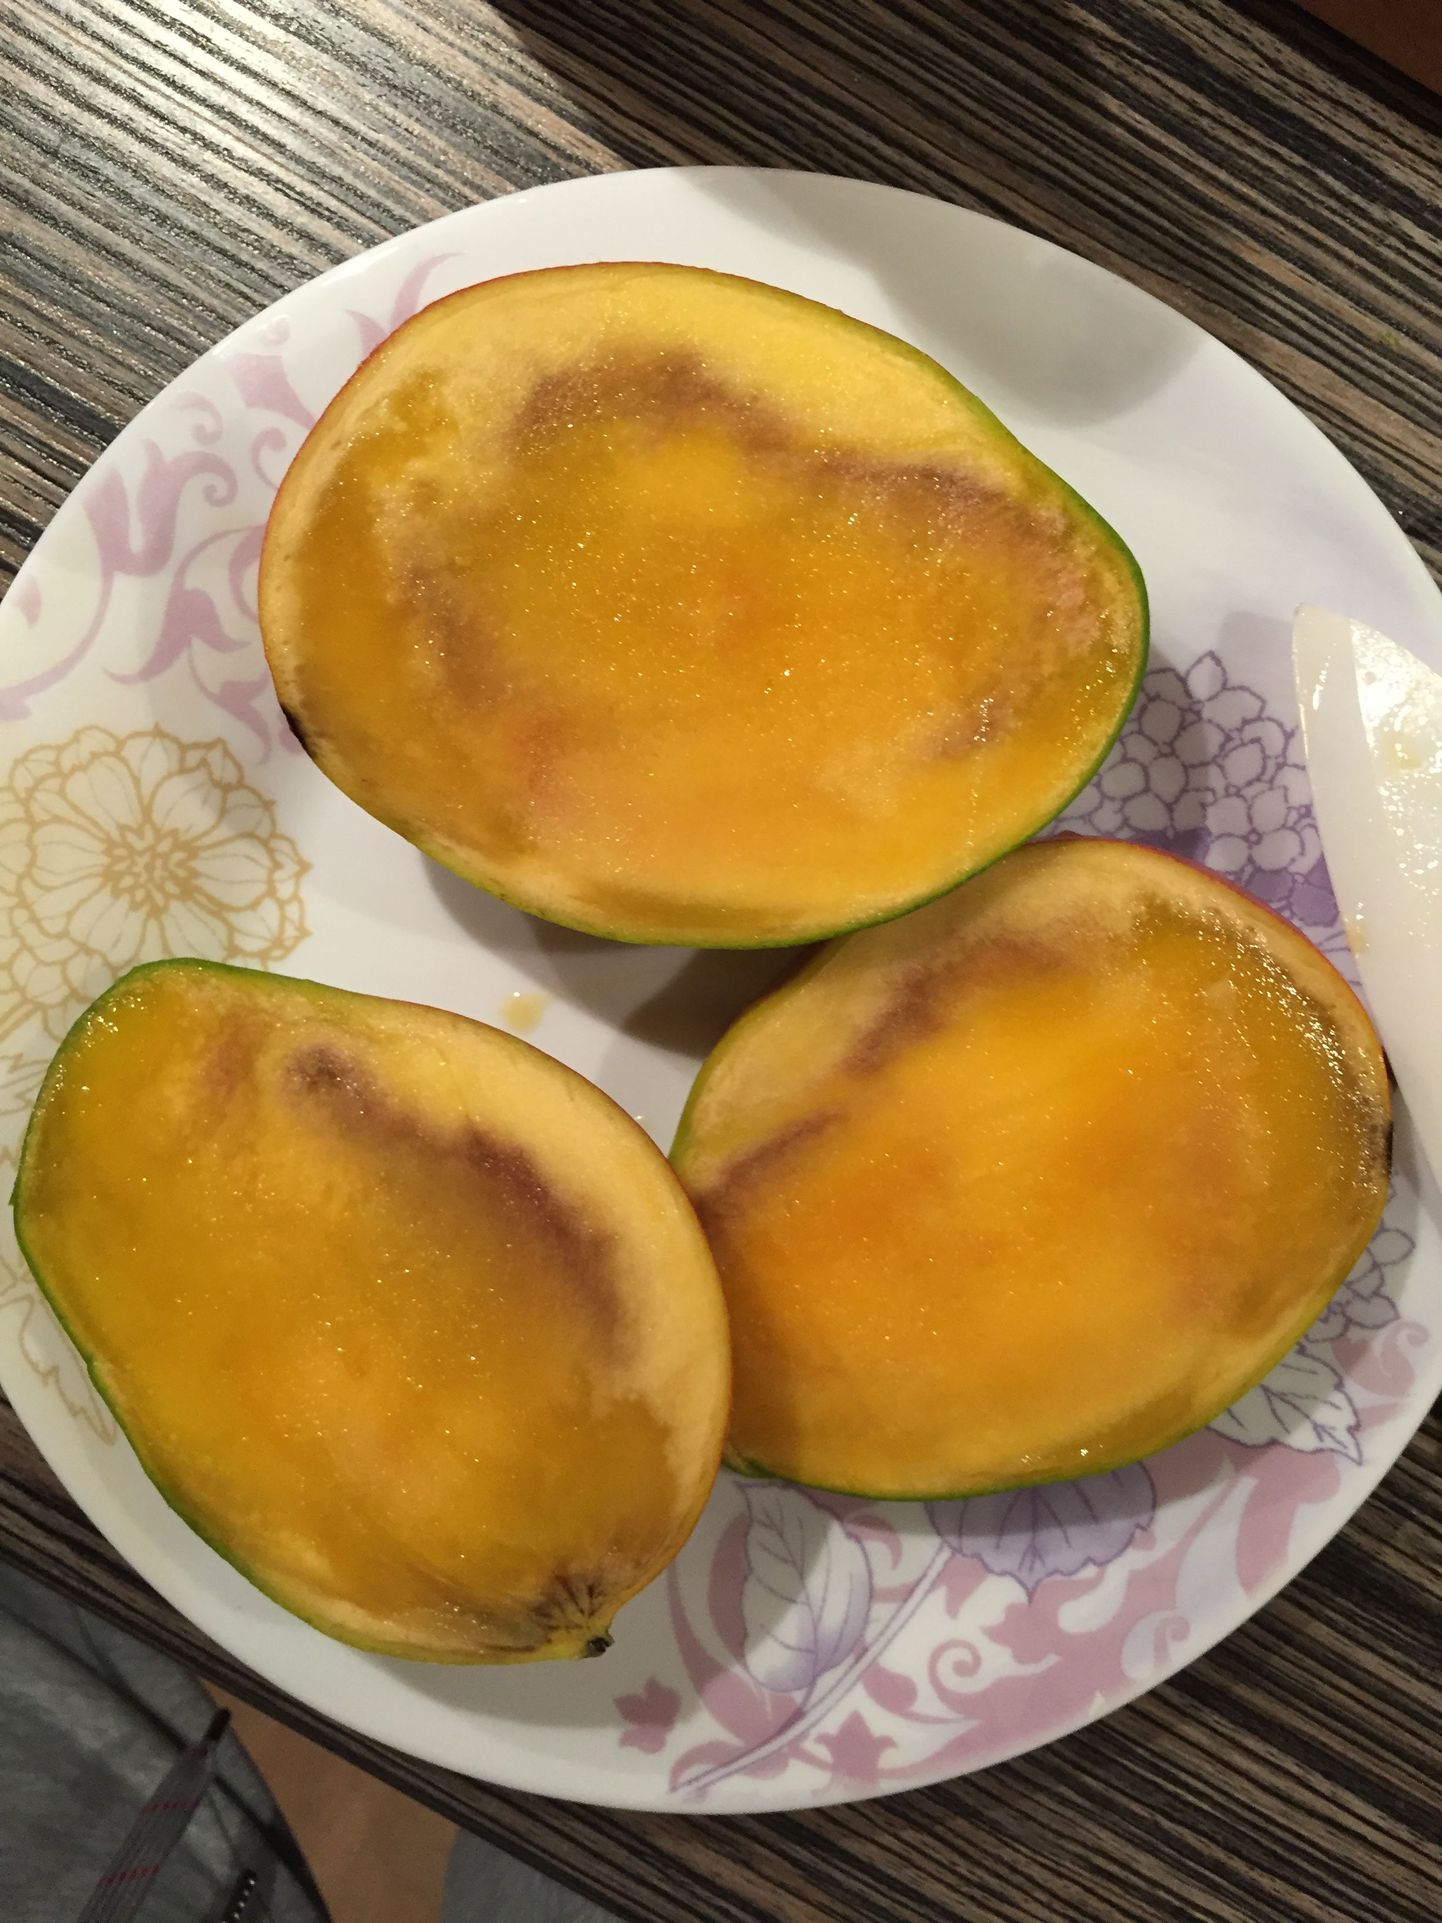 Sellised nägid välja hiljuti Rebase Rimist ostetud mangod seest.